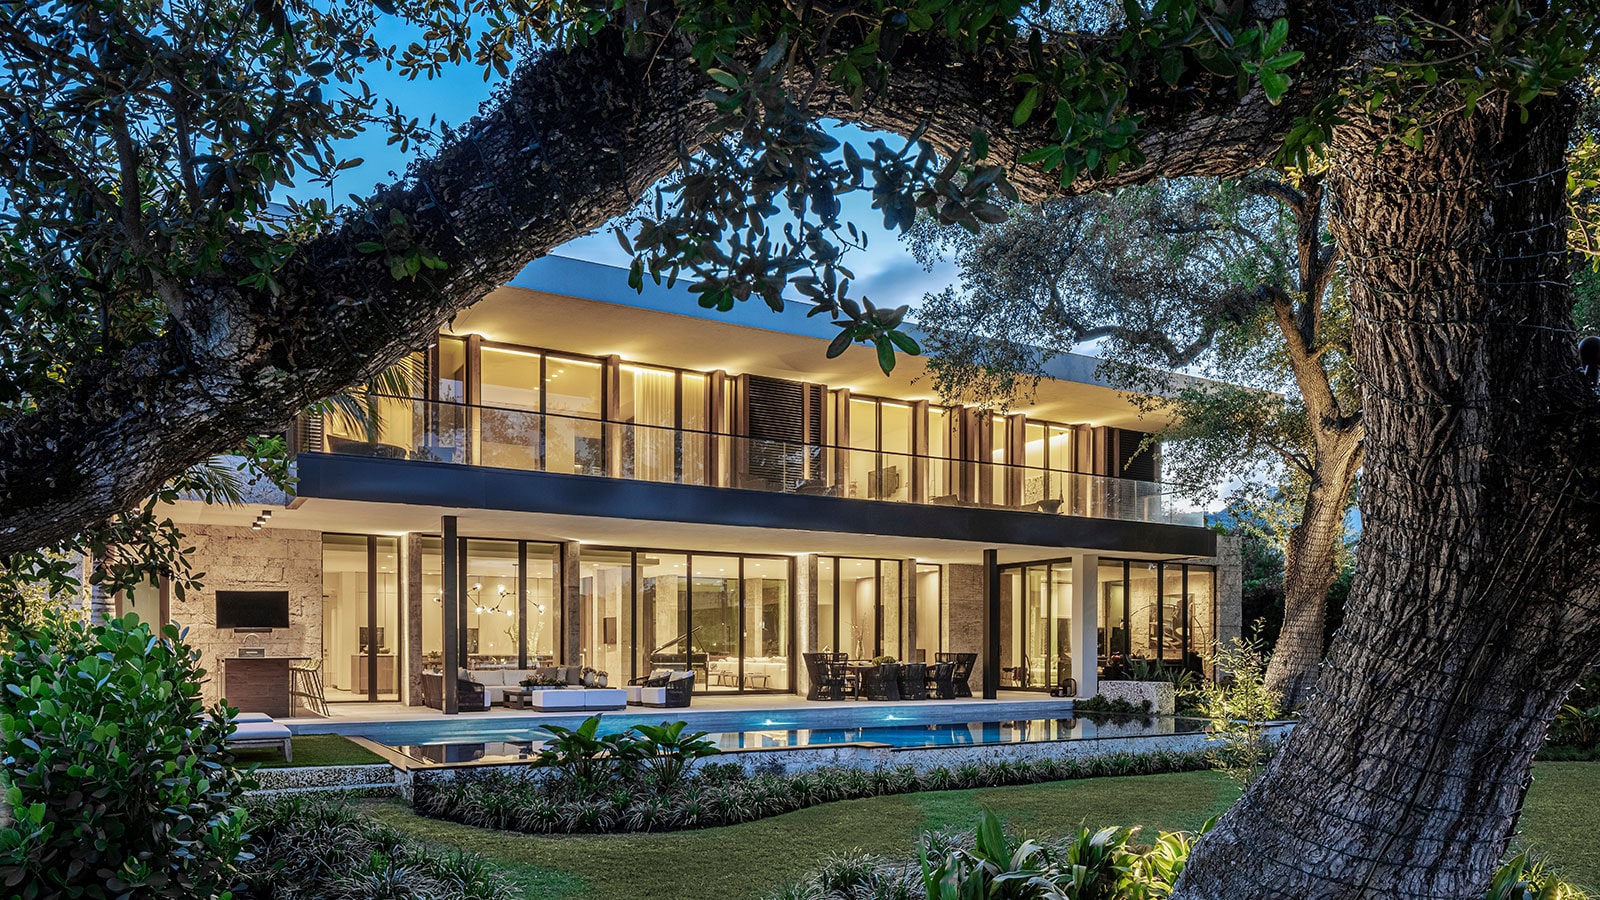 "Florida Villa Strang Design indiaartndesign"